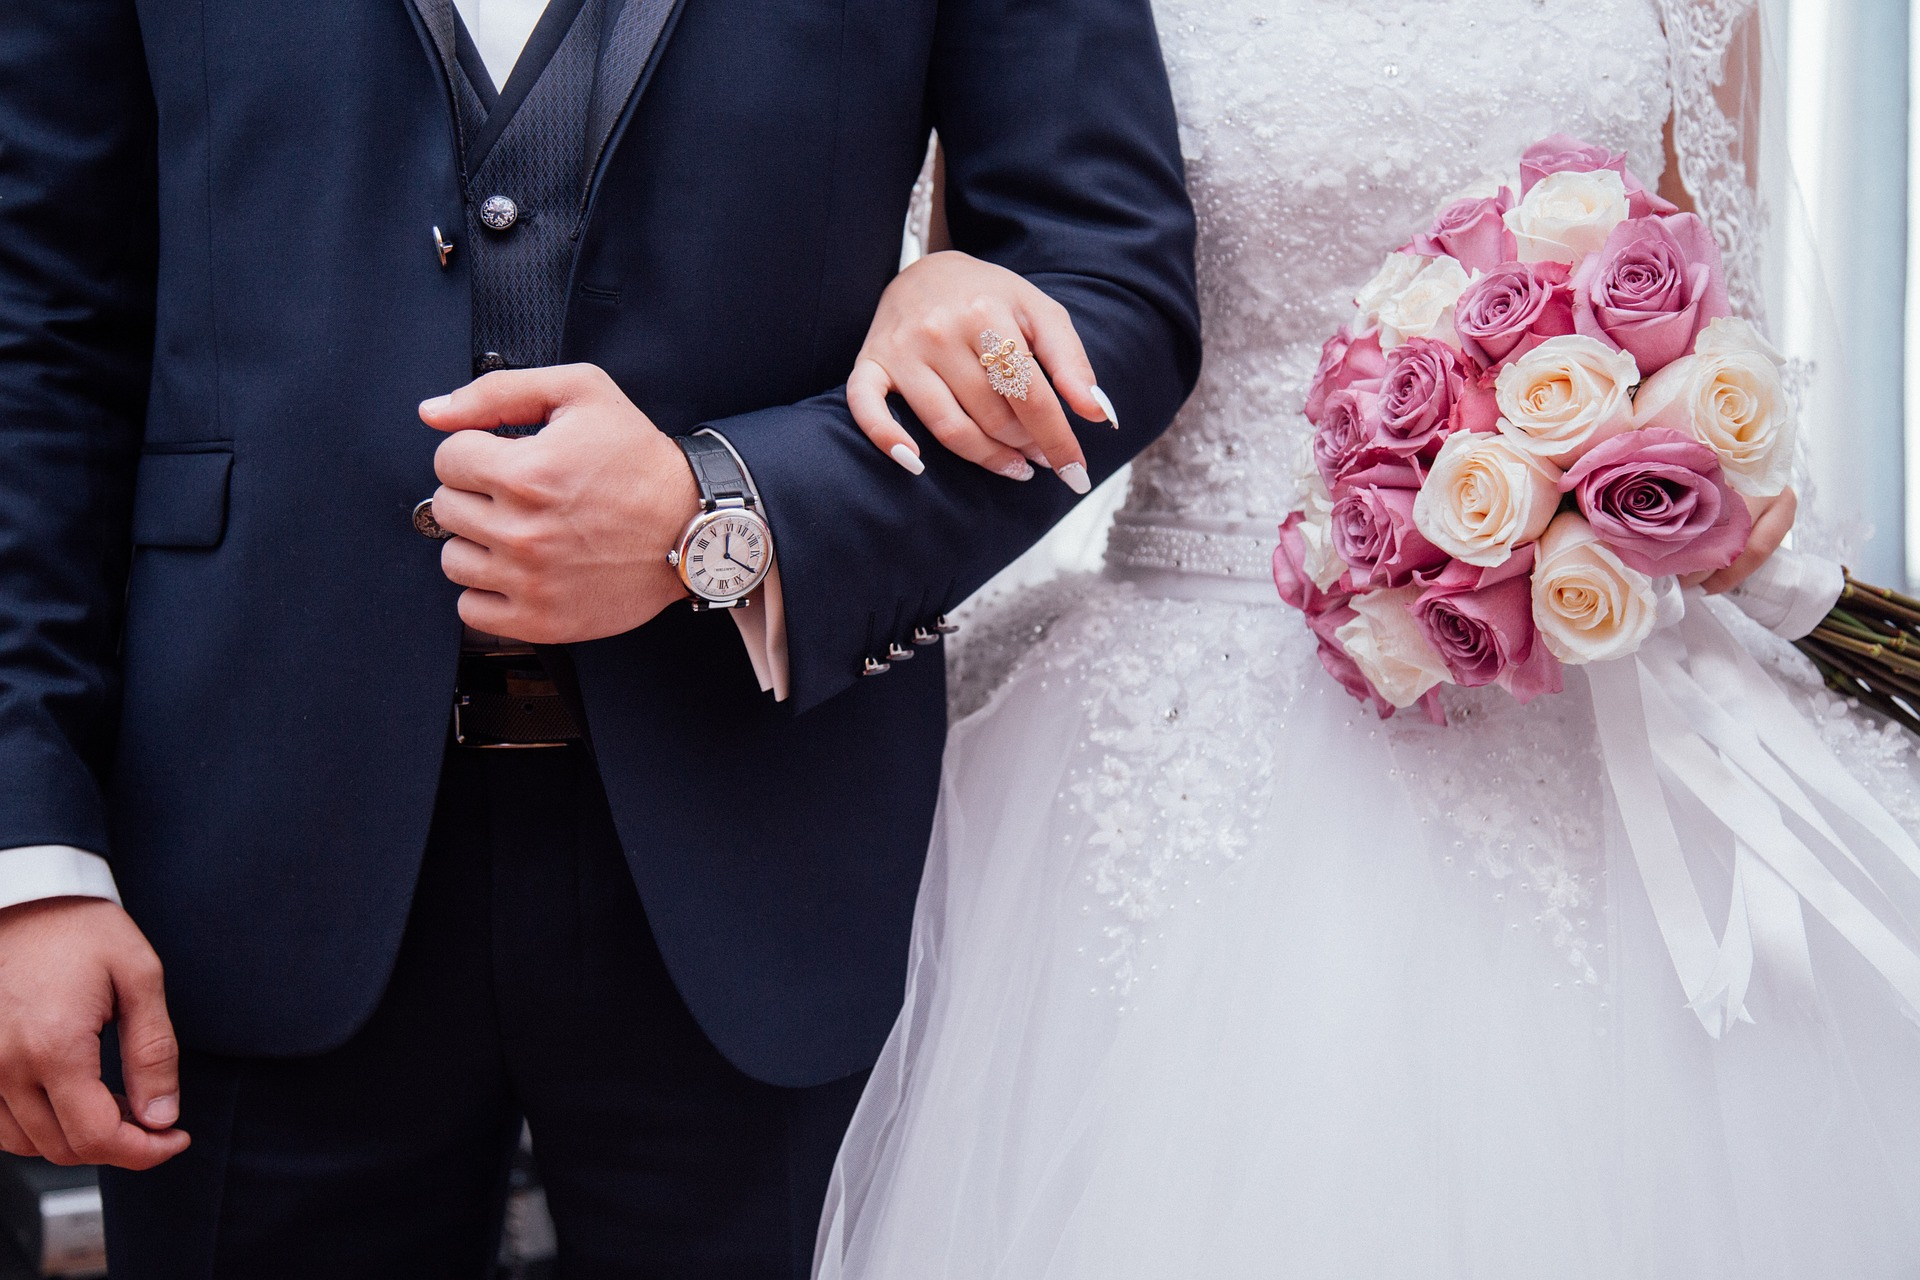 Matrimonio dopo tanti anni di convivenza: perché si sceglie di sposarsi?